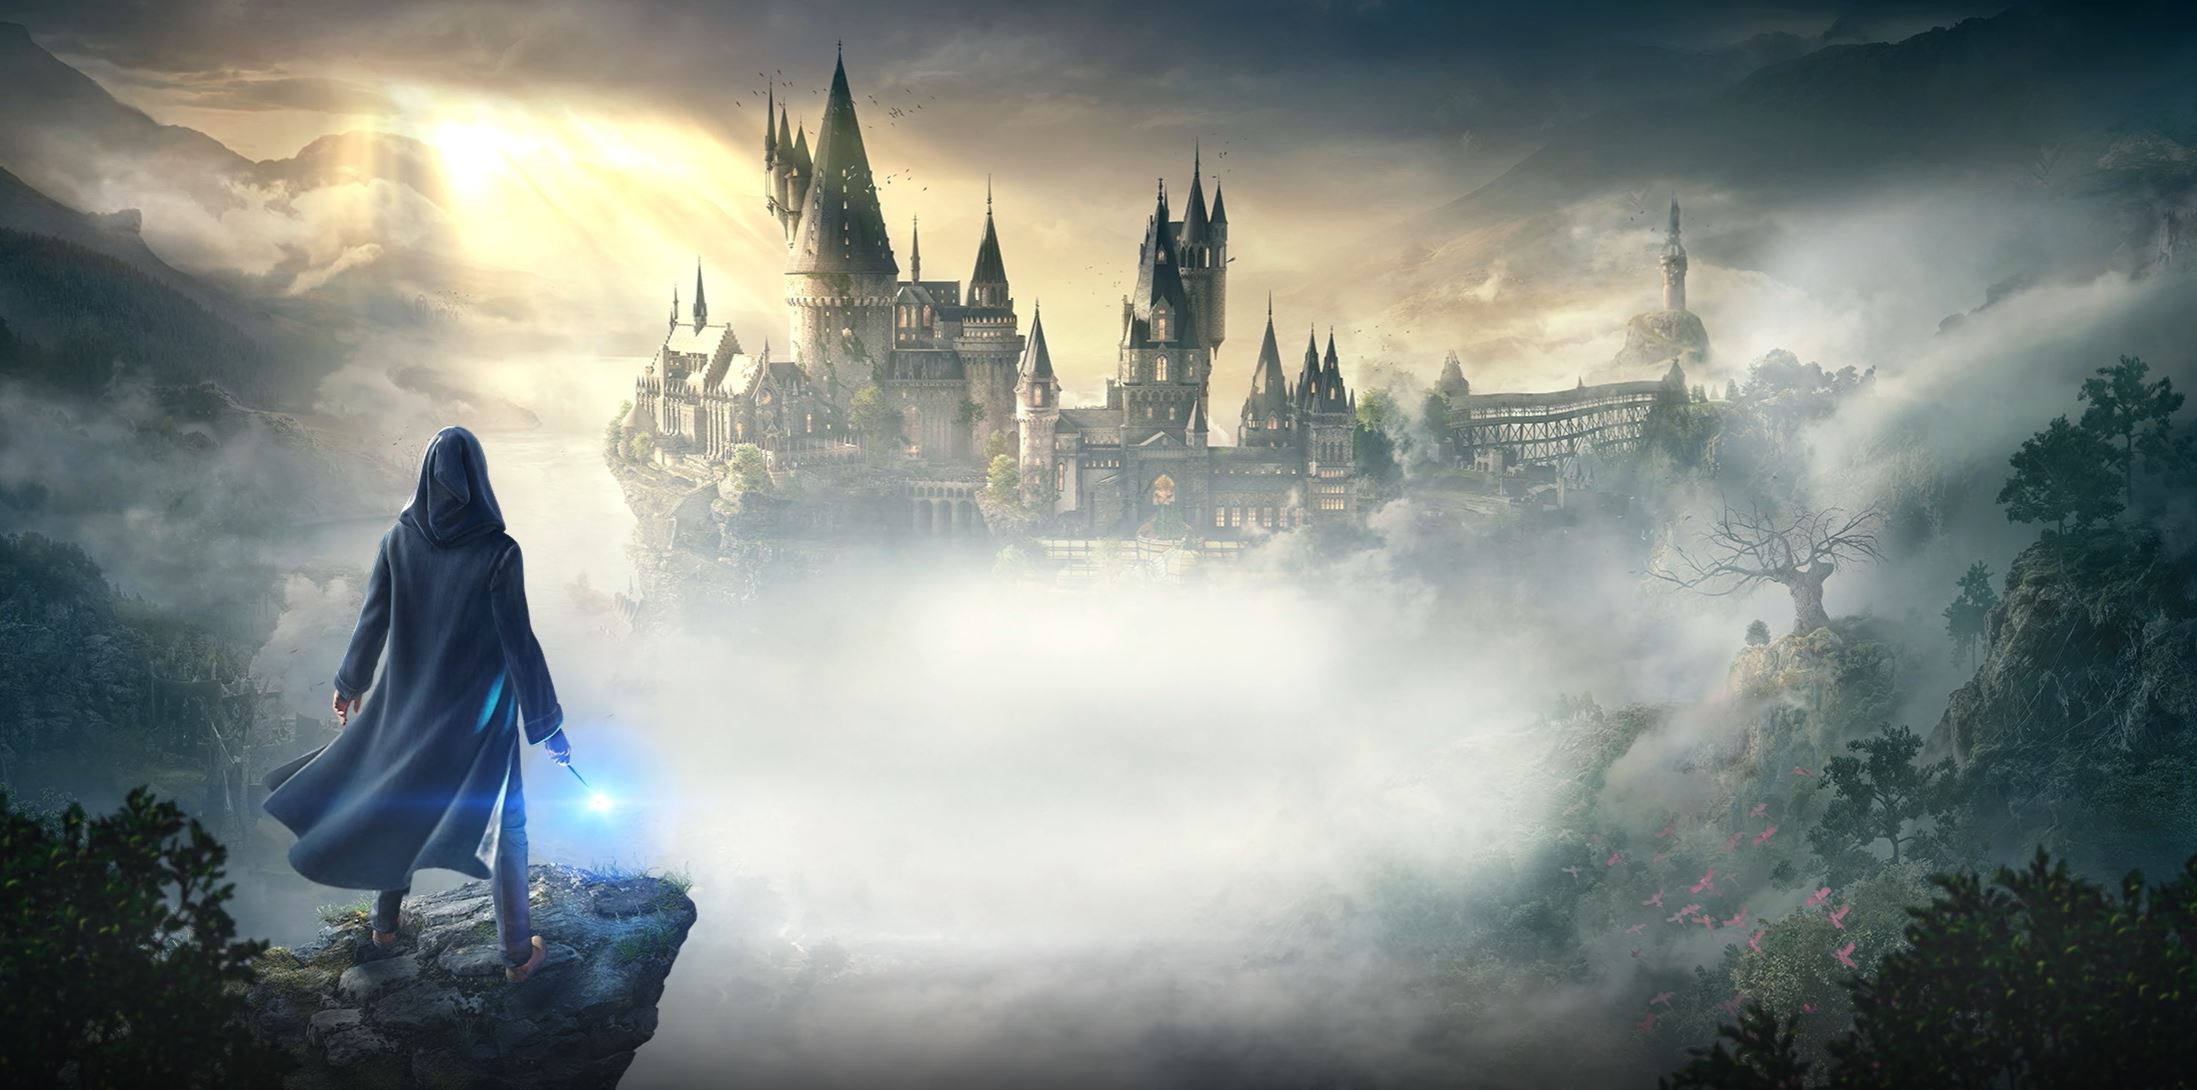 Hogwarts Legacy - Xbox One (Digital)